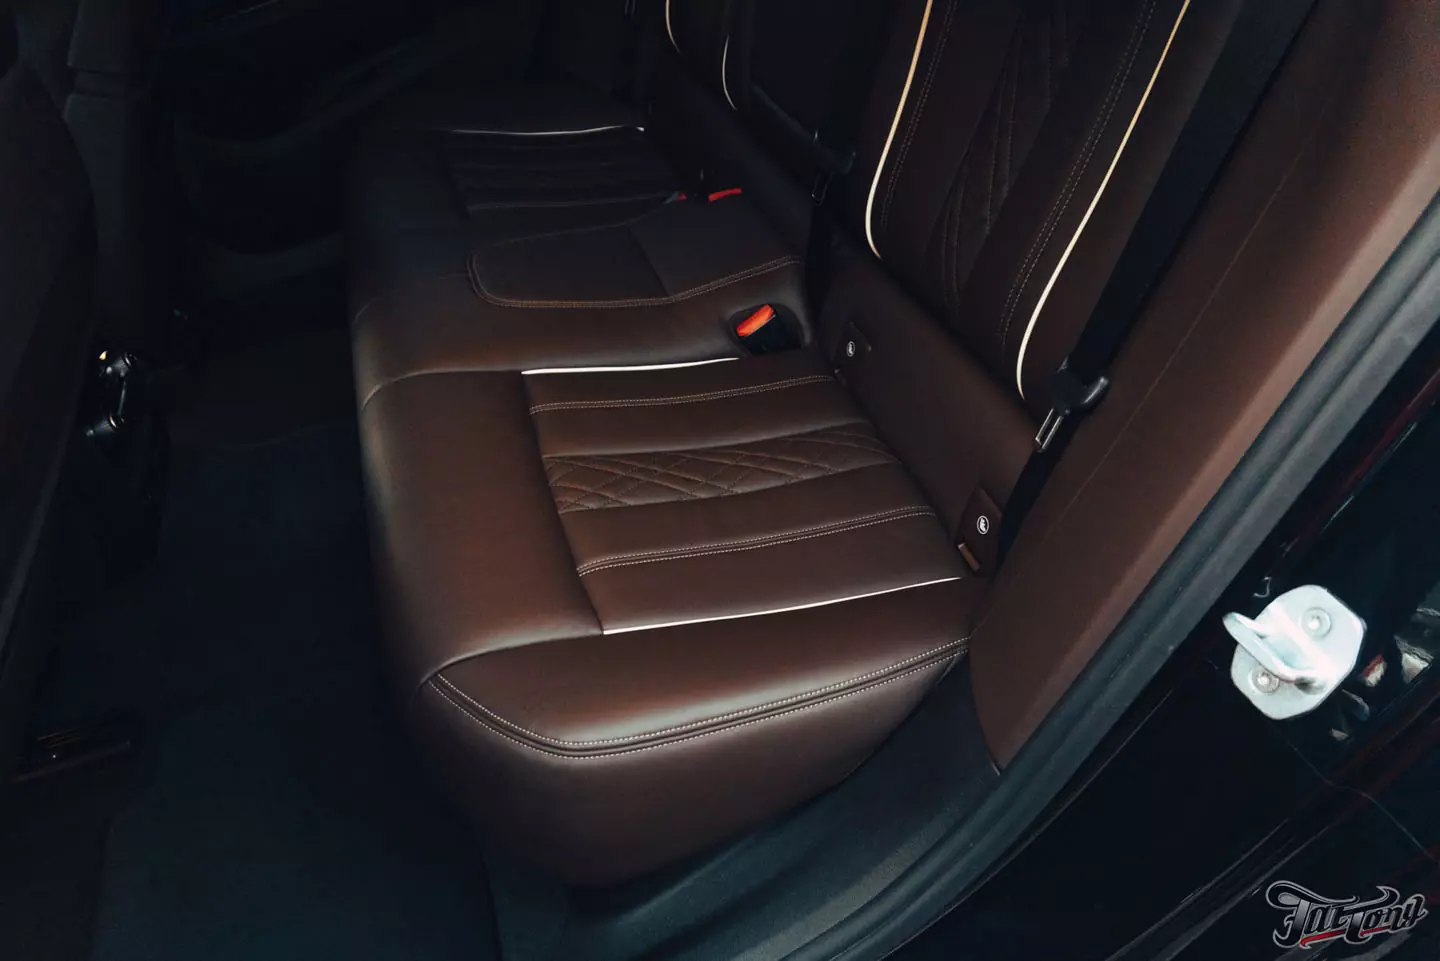 Оклейка полиуретаном BMW 630d GT, чистка и покрытие керамикой кожи